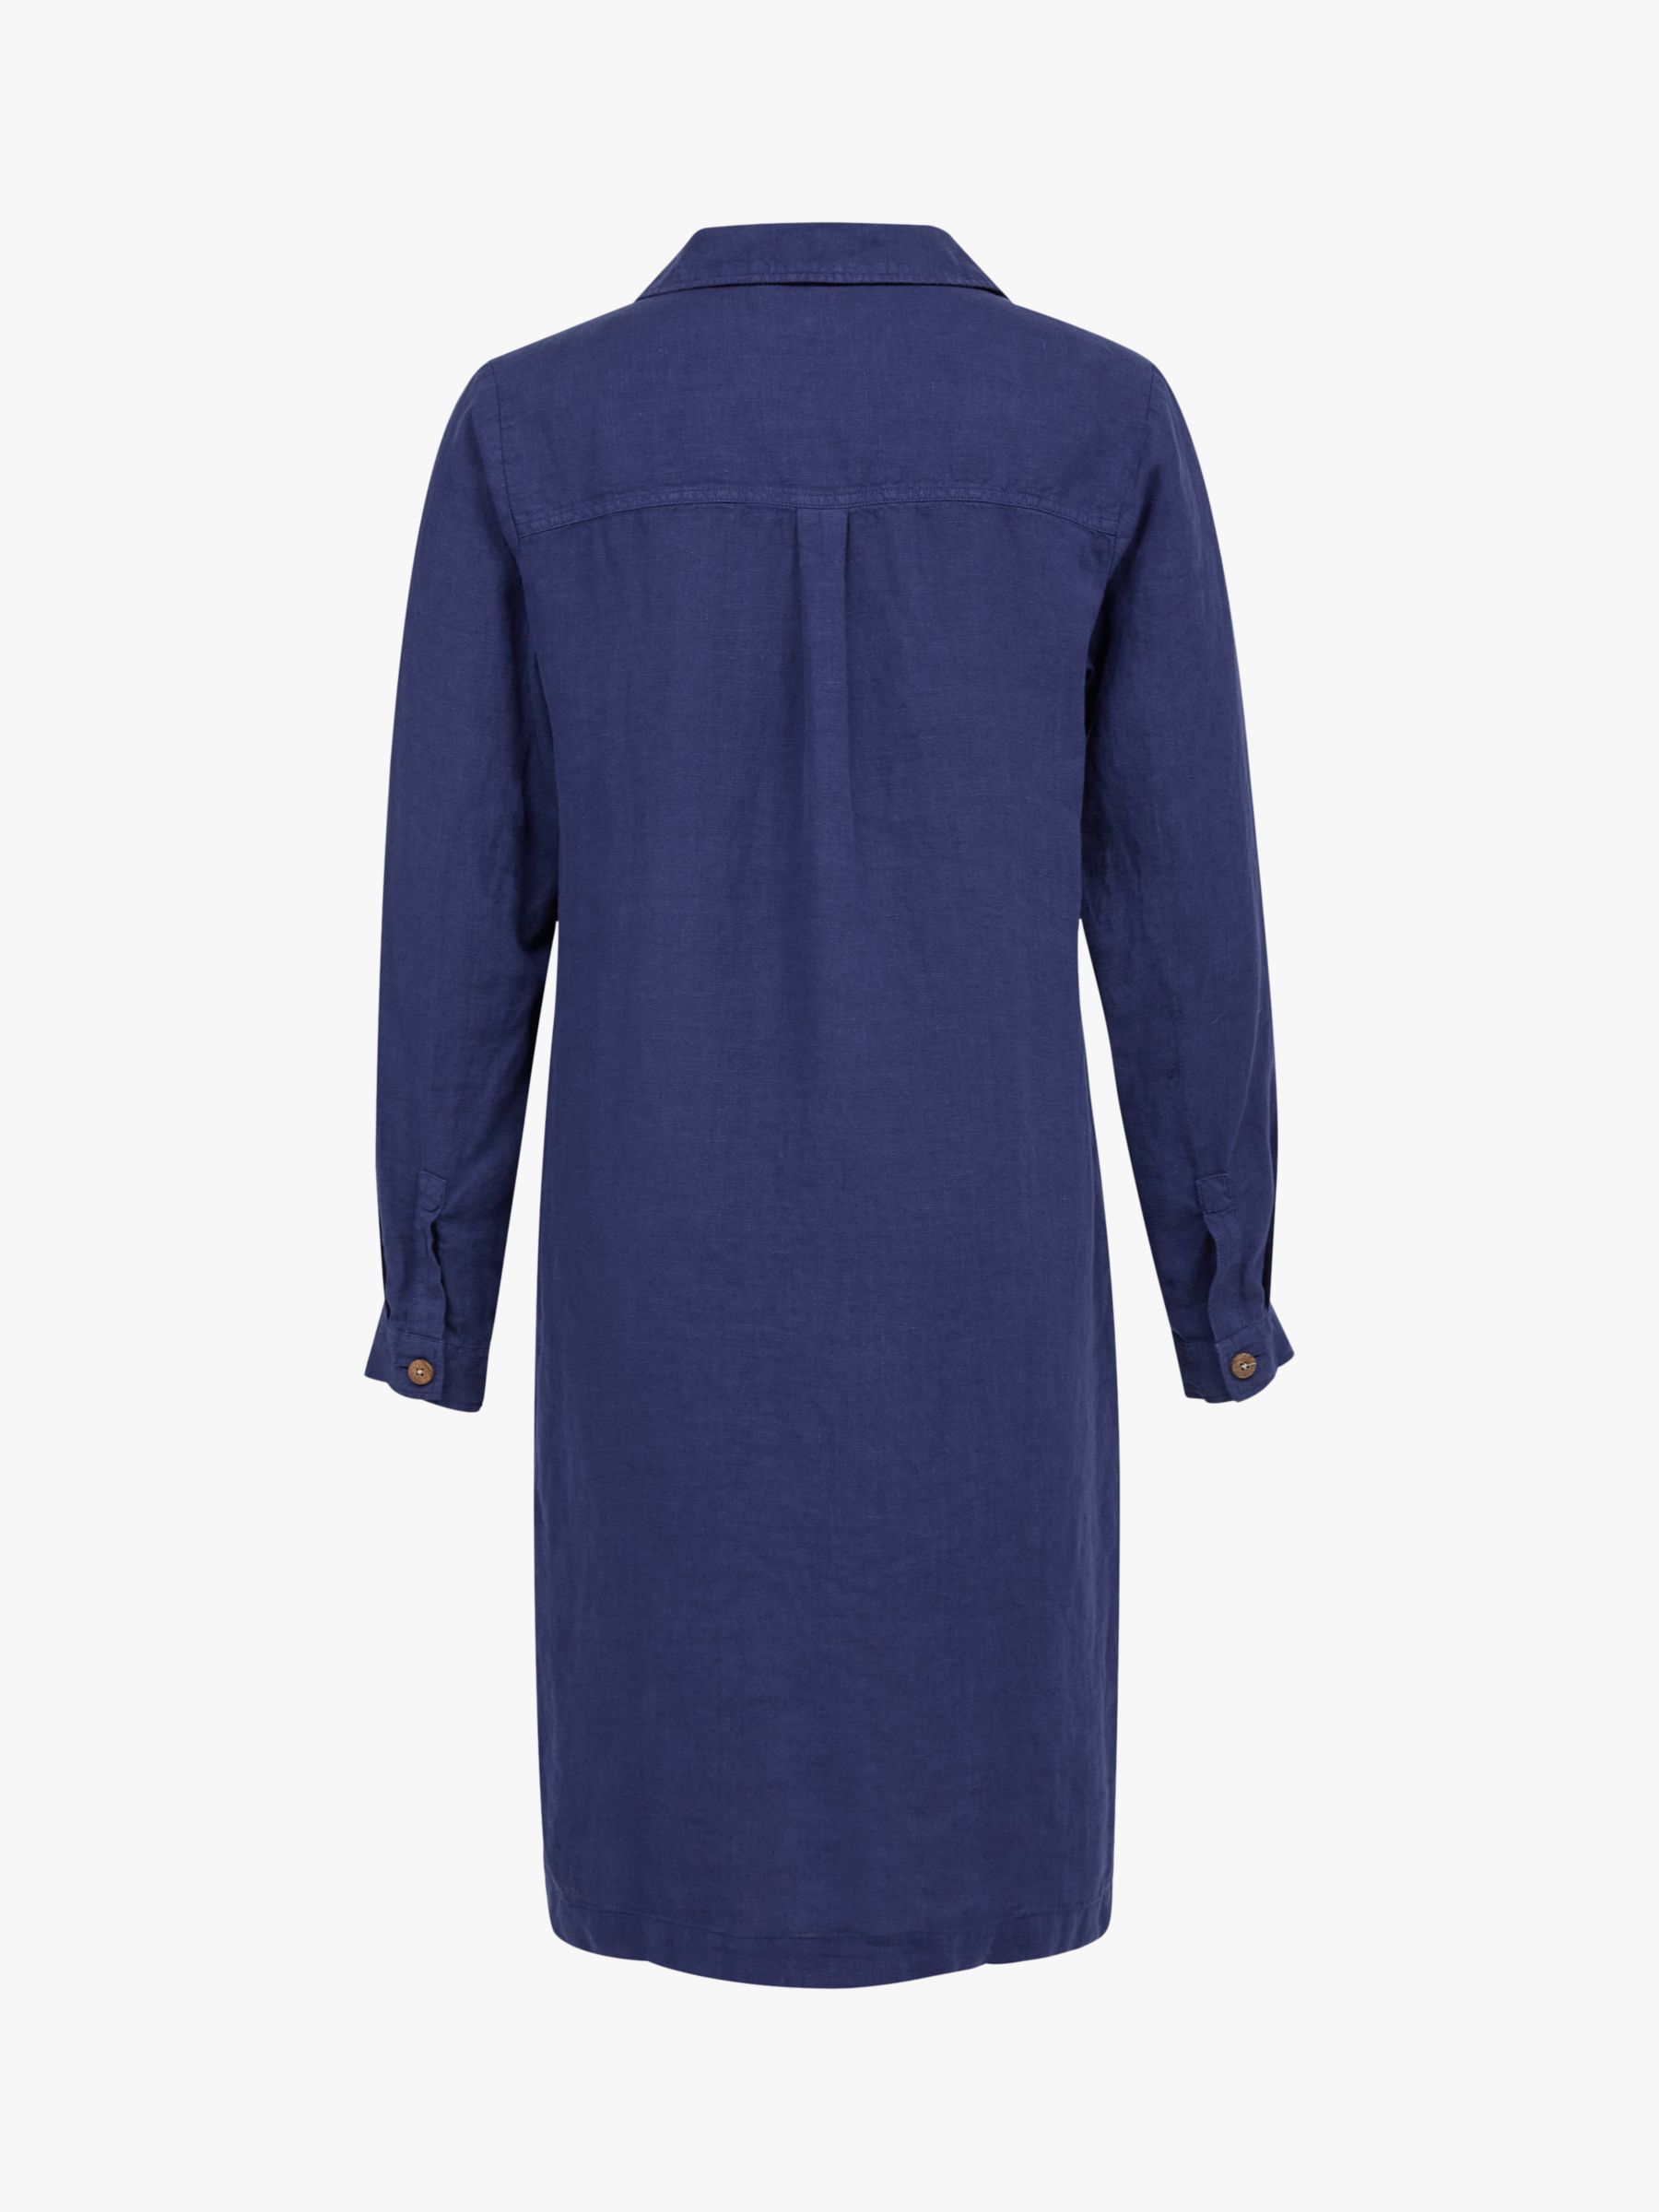 Celtic & Co. Linen Half Placket Dress, Blue Ink, 12